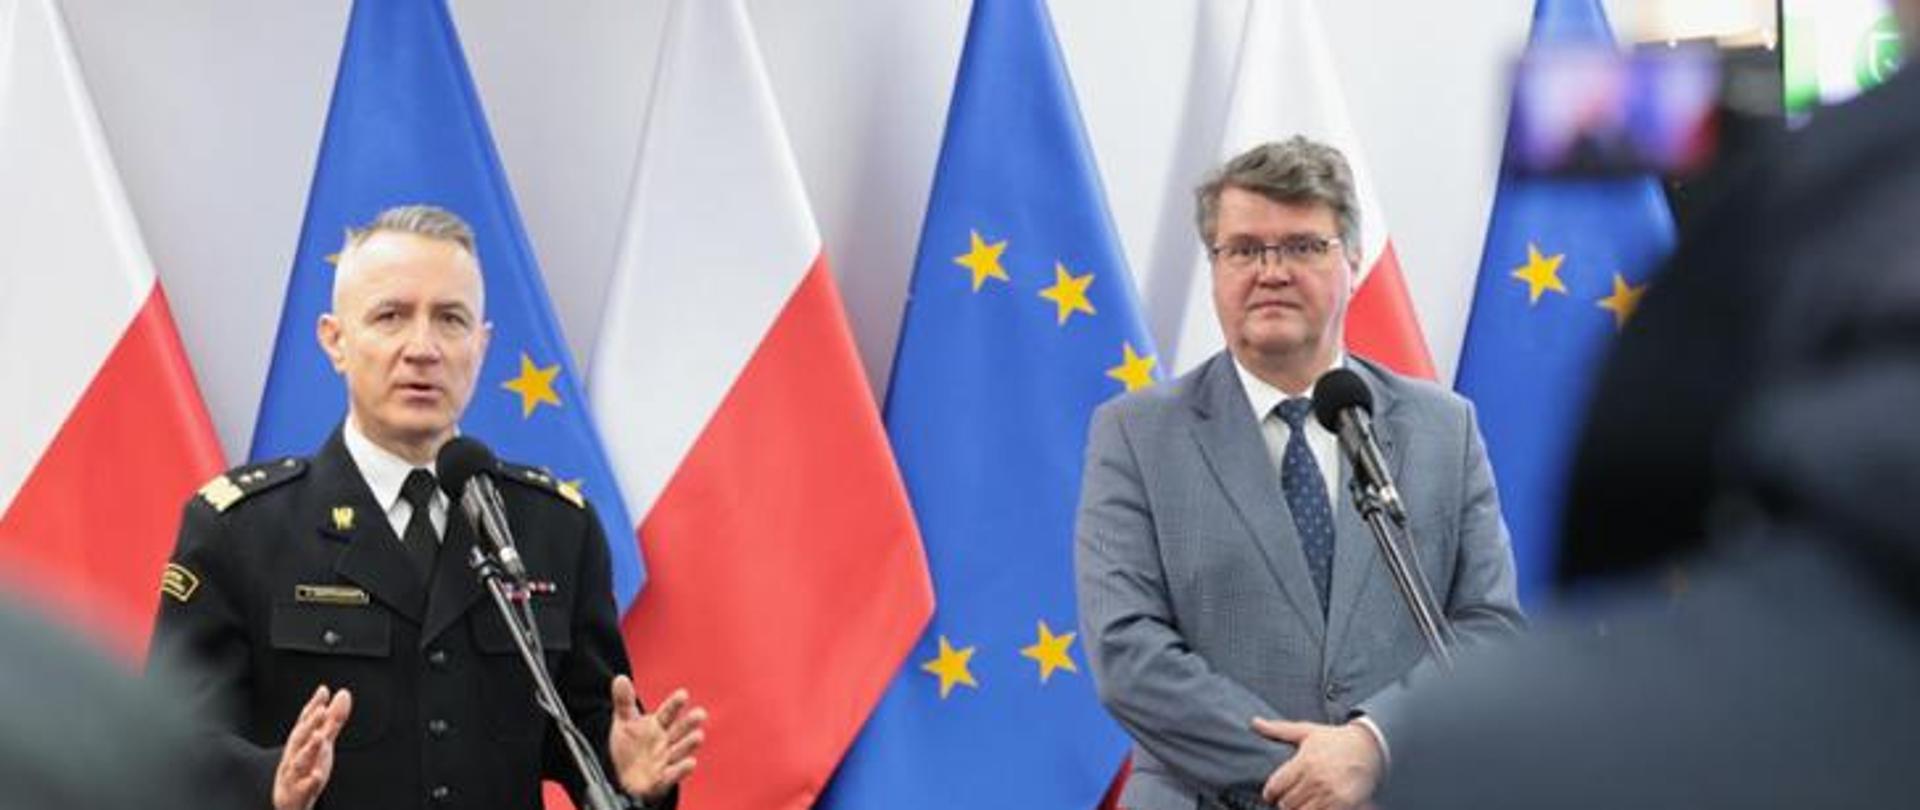 Wiceminister Maciej Wąsik oraz gen. brygadier Andrzej Bartkowiak - Komendant Główny PSP na tle flag Polski i Unii Europejskiej